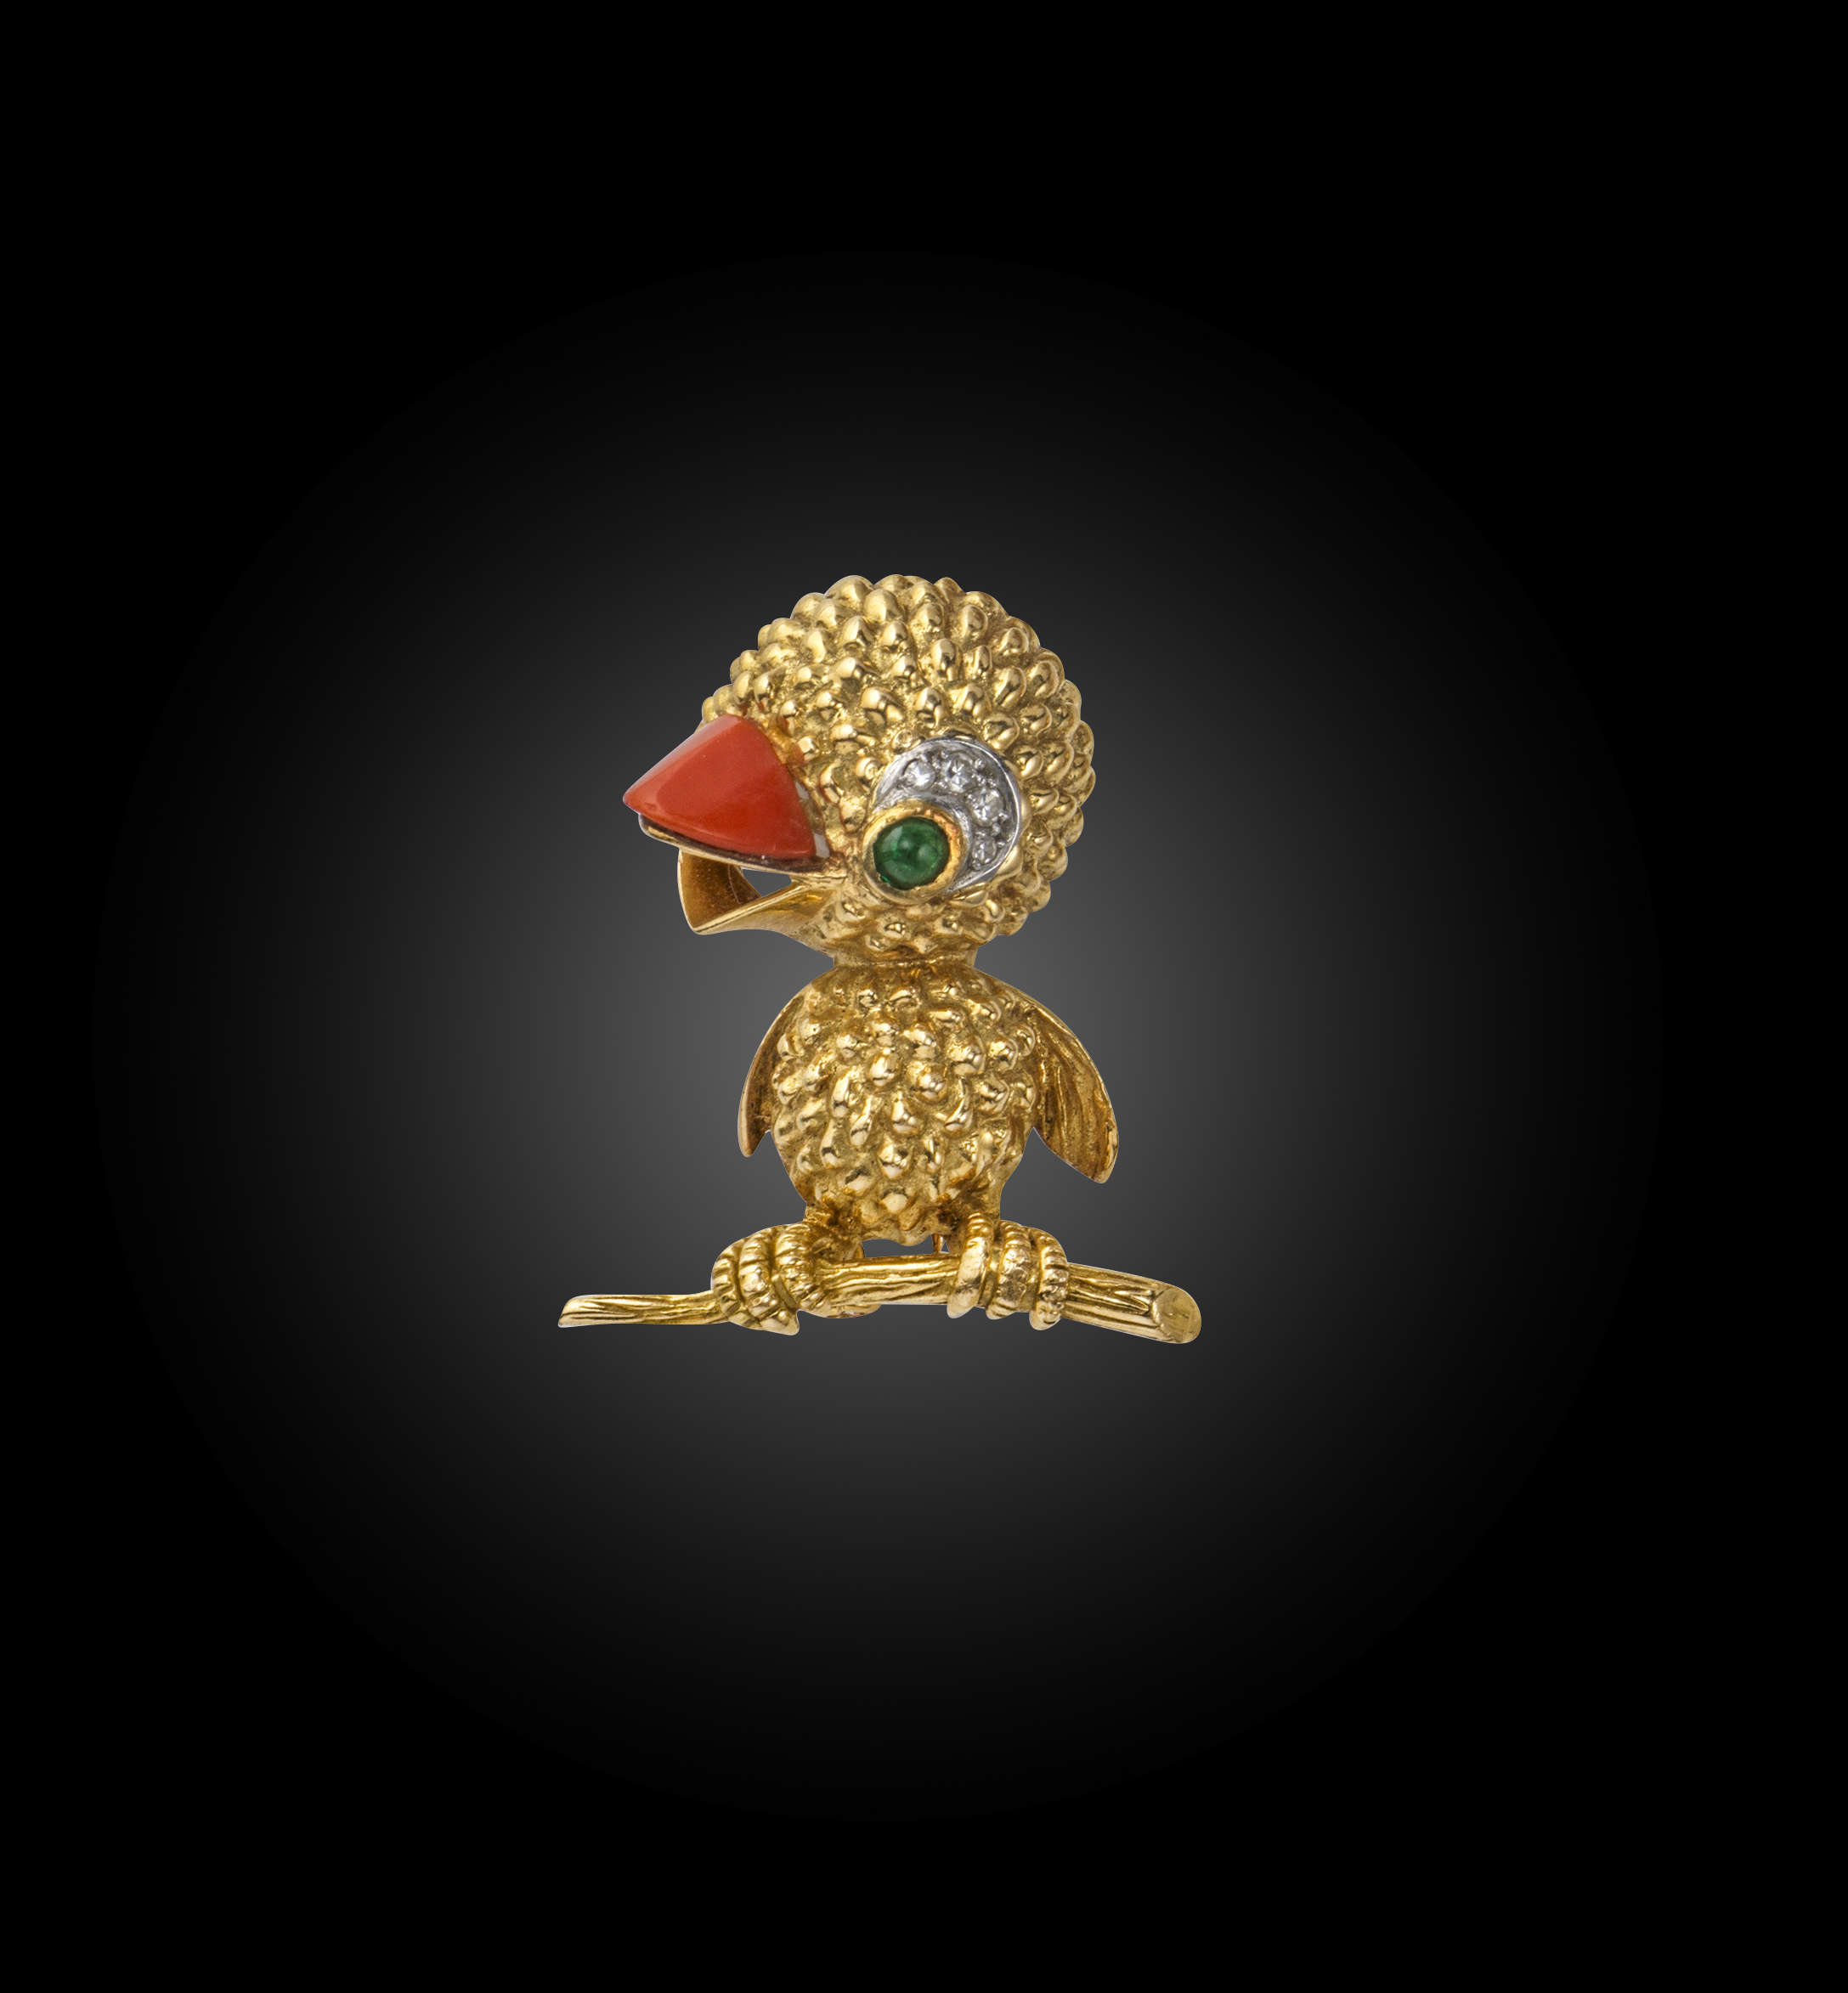 λ Jacques Lacloche, an emerald, coral and diamond brooch, mid 20th century, designed as a chick in